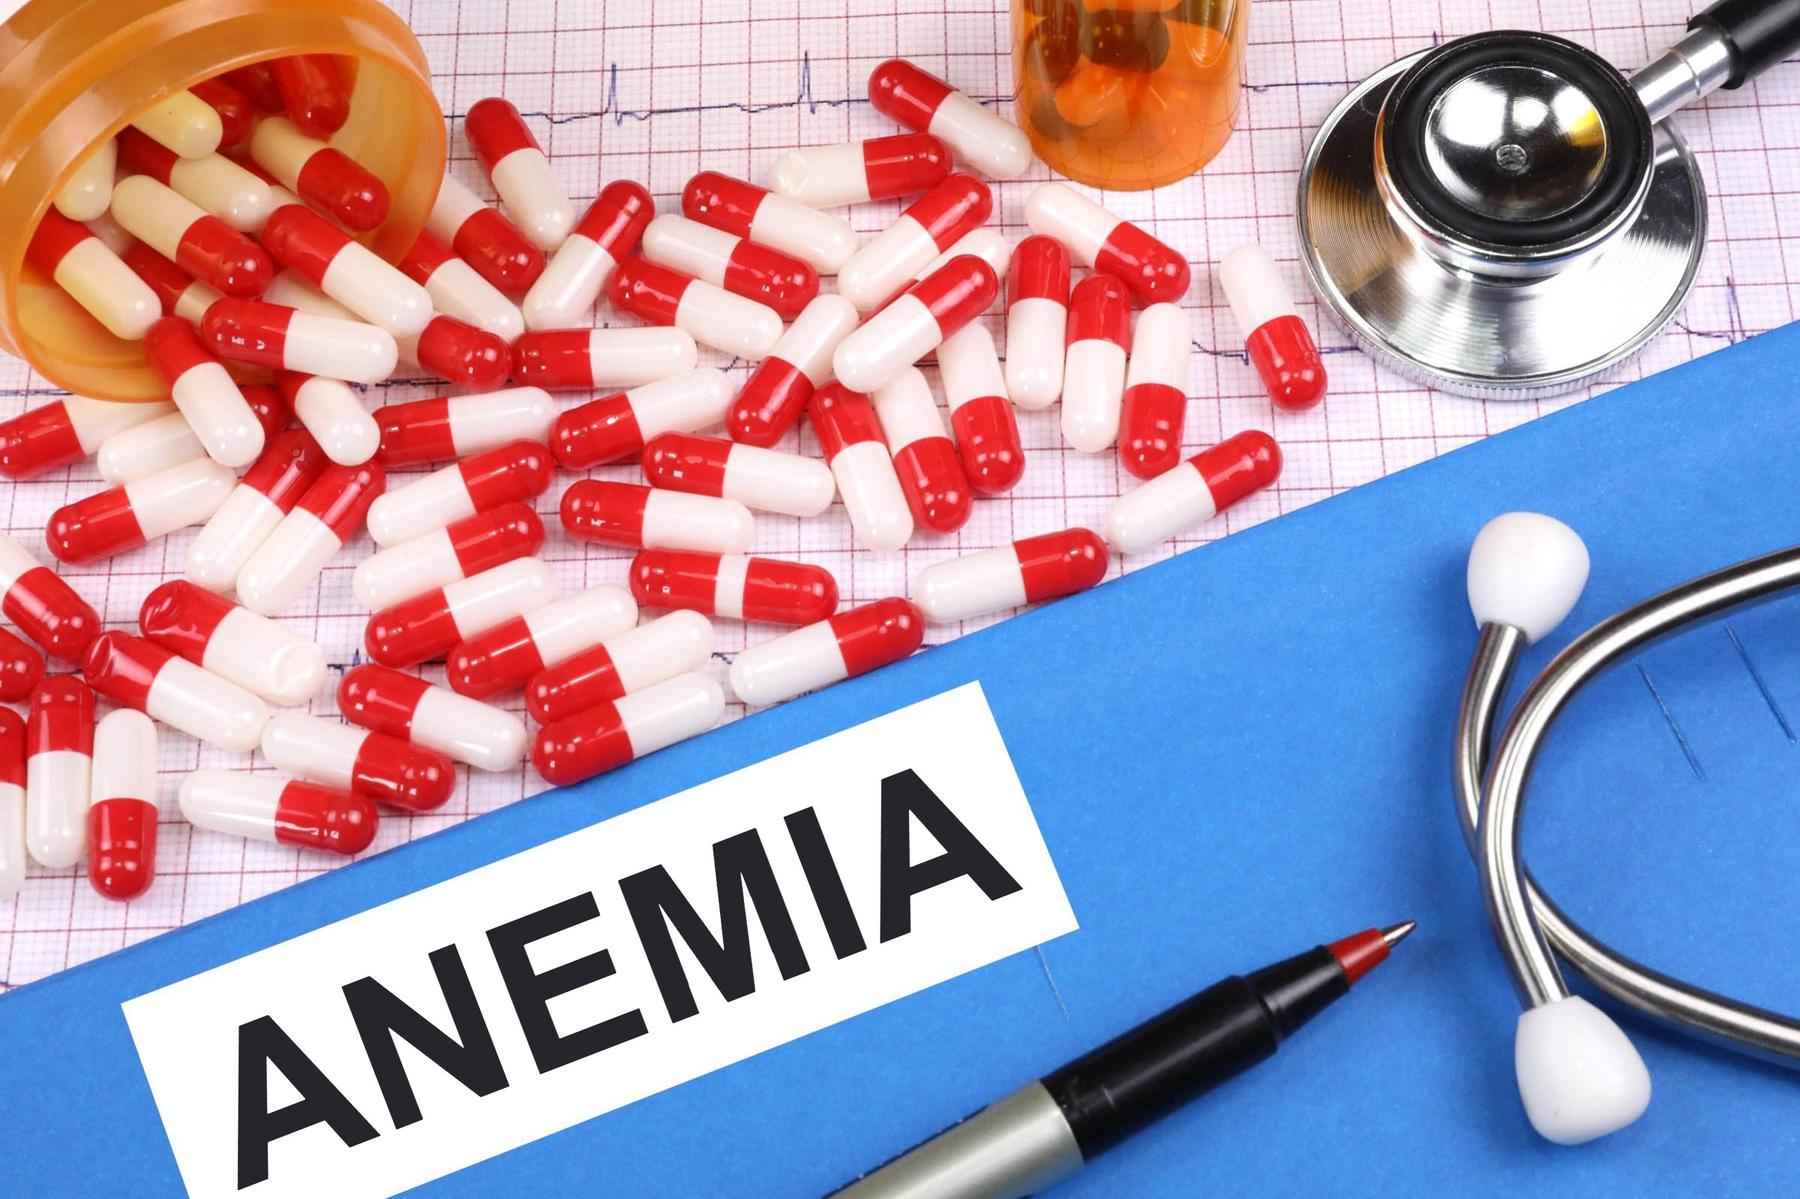 Anemia afeta 30% da população mundial, alerta Organização Mundial da Saúde - Pixafree